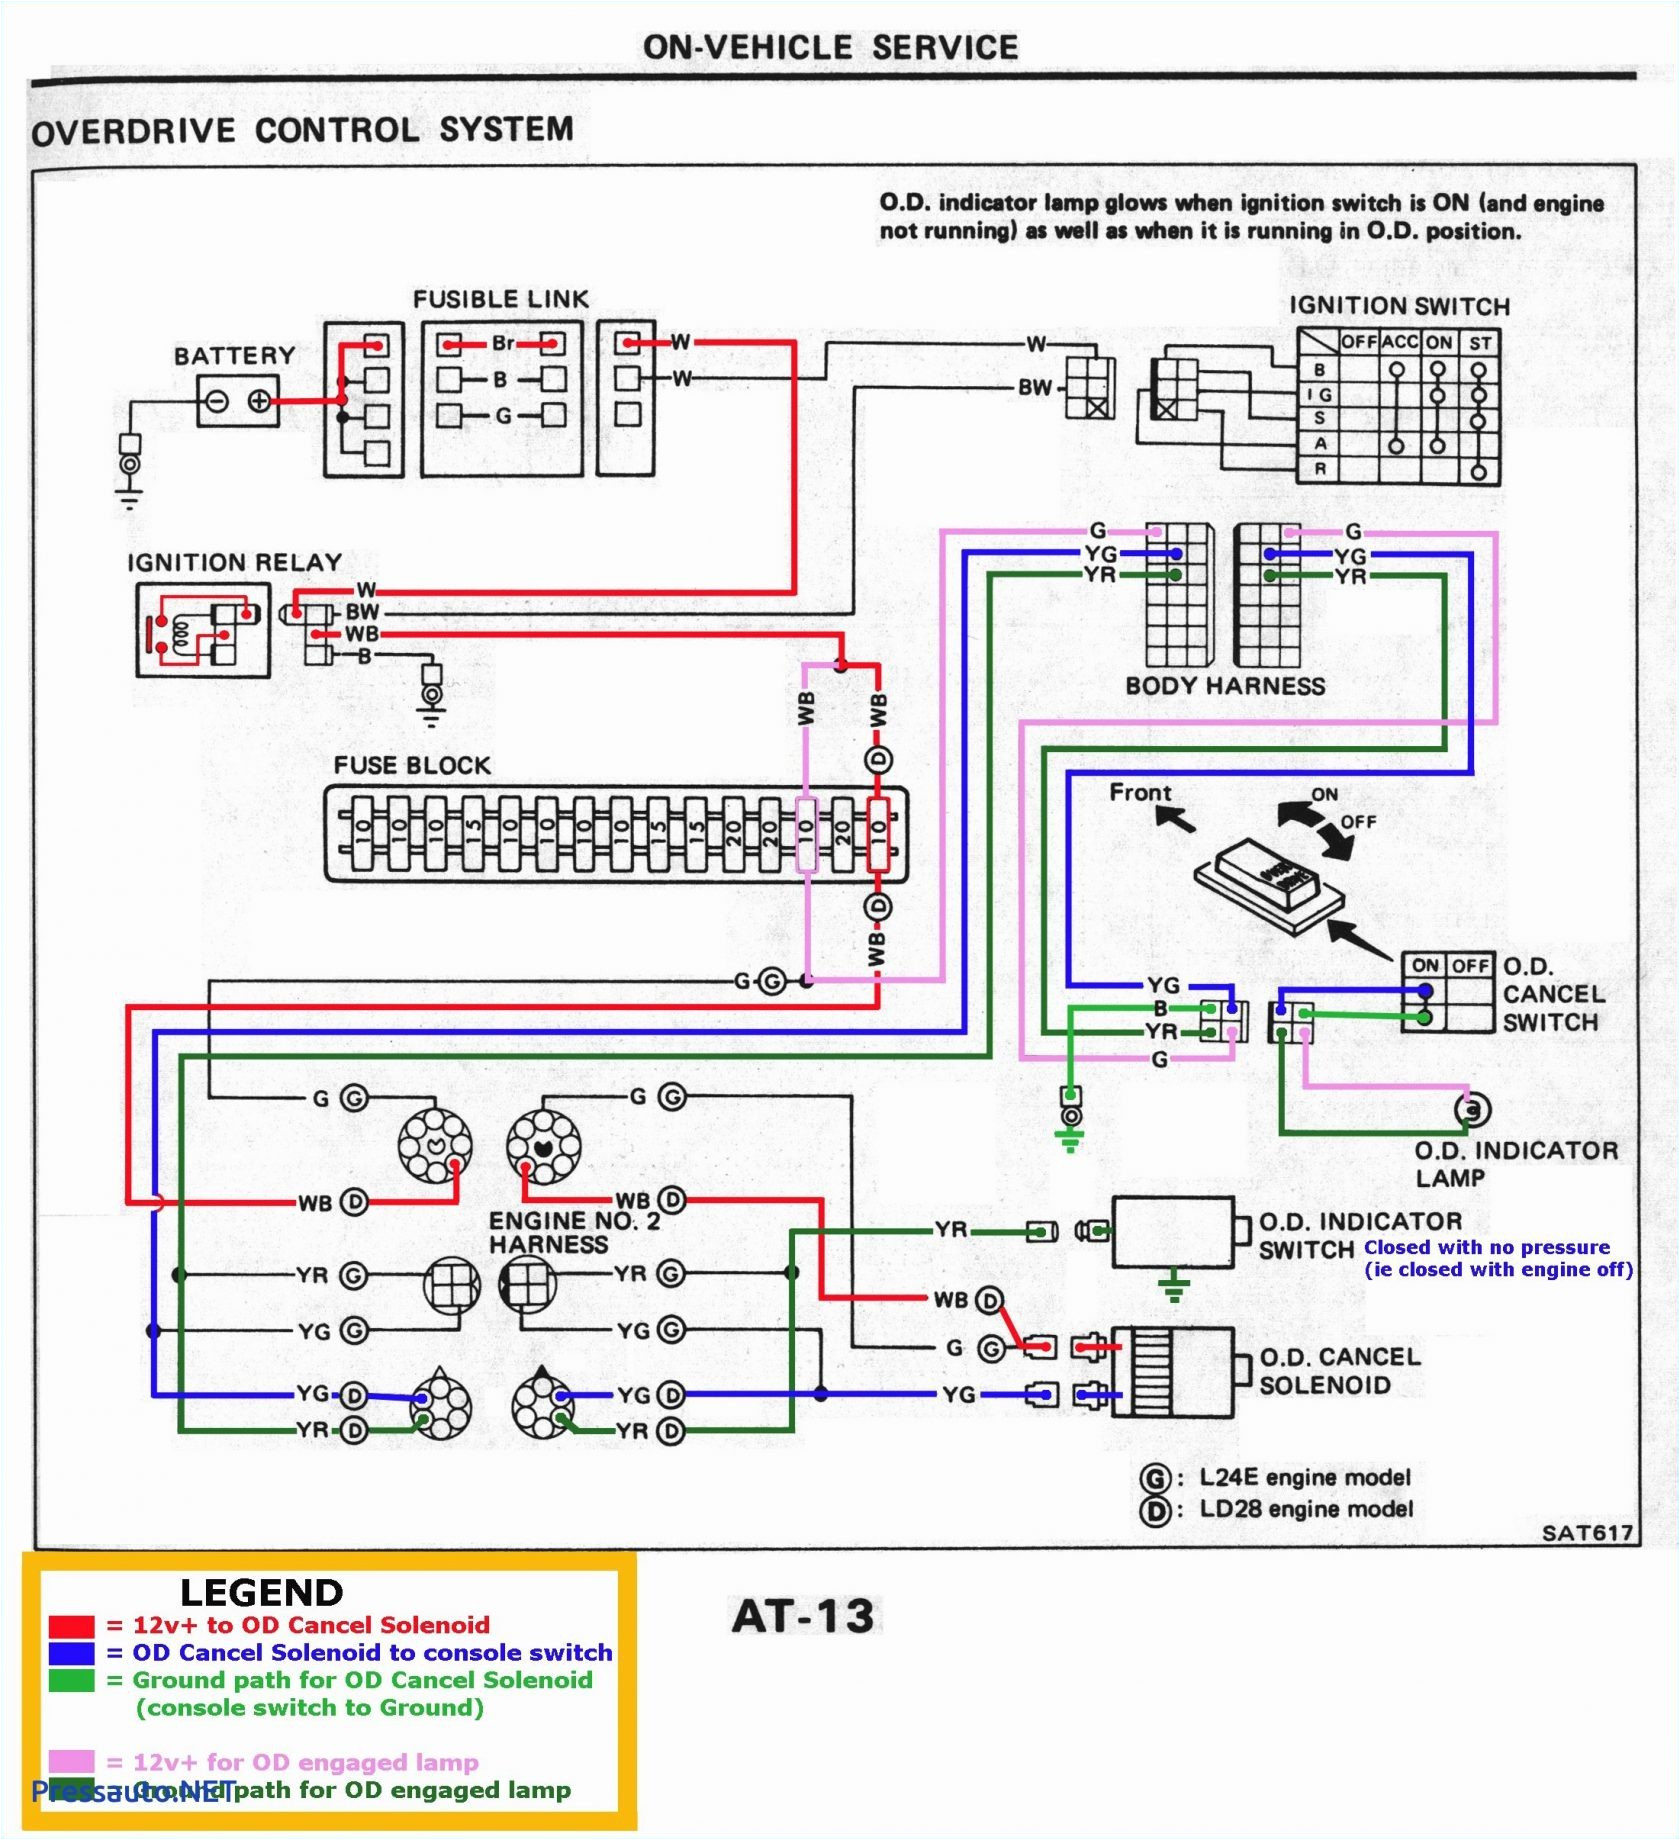 2003 Chevy Silverado Climate Control Wiring Diagram Chevy Silverado Trailer Plug Wiring Diagram Keju Fuse12